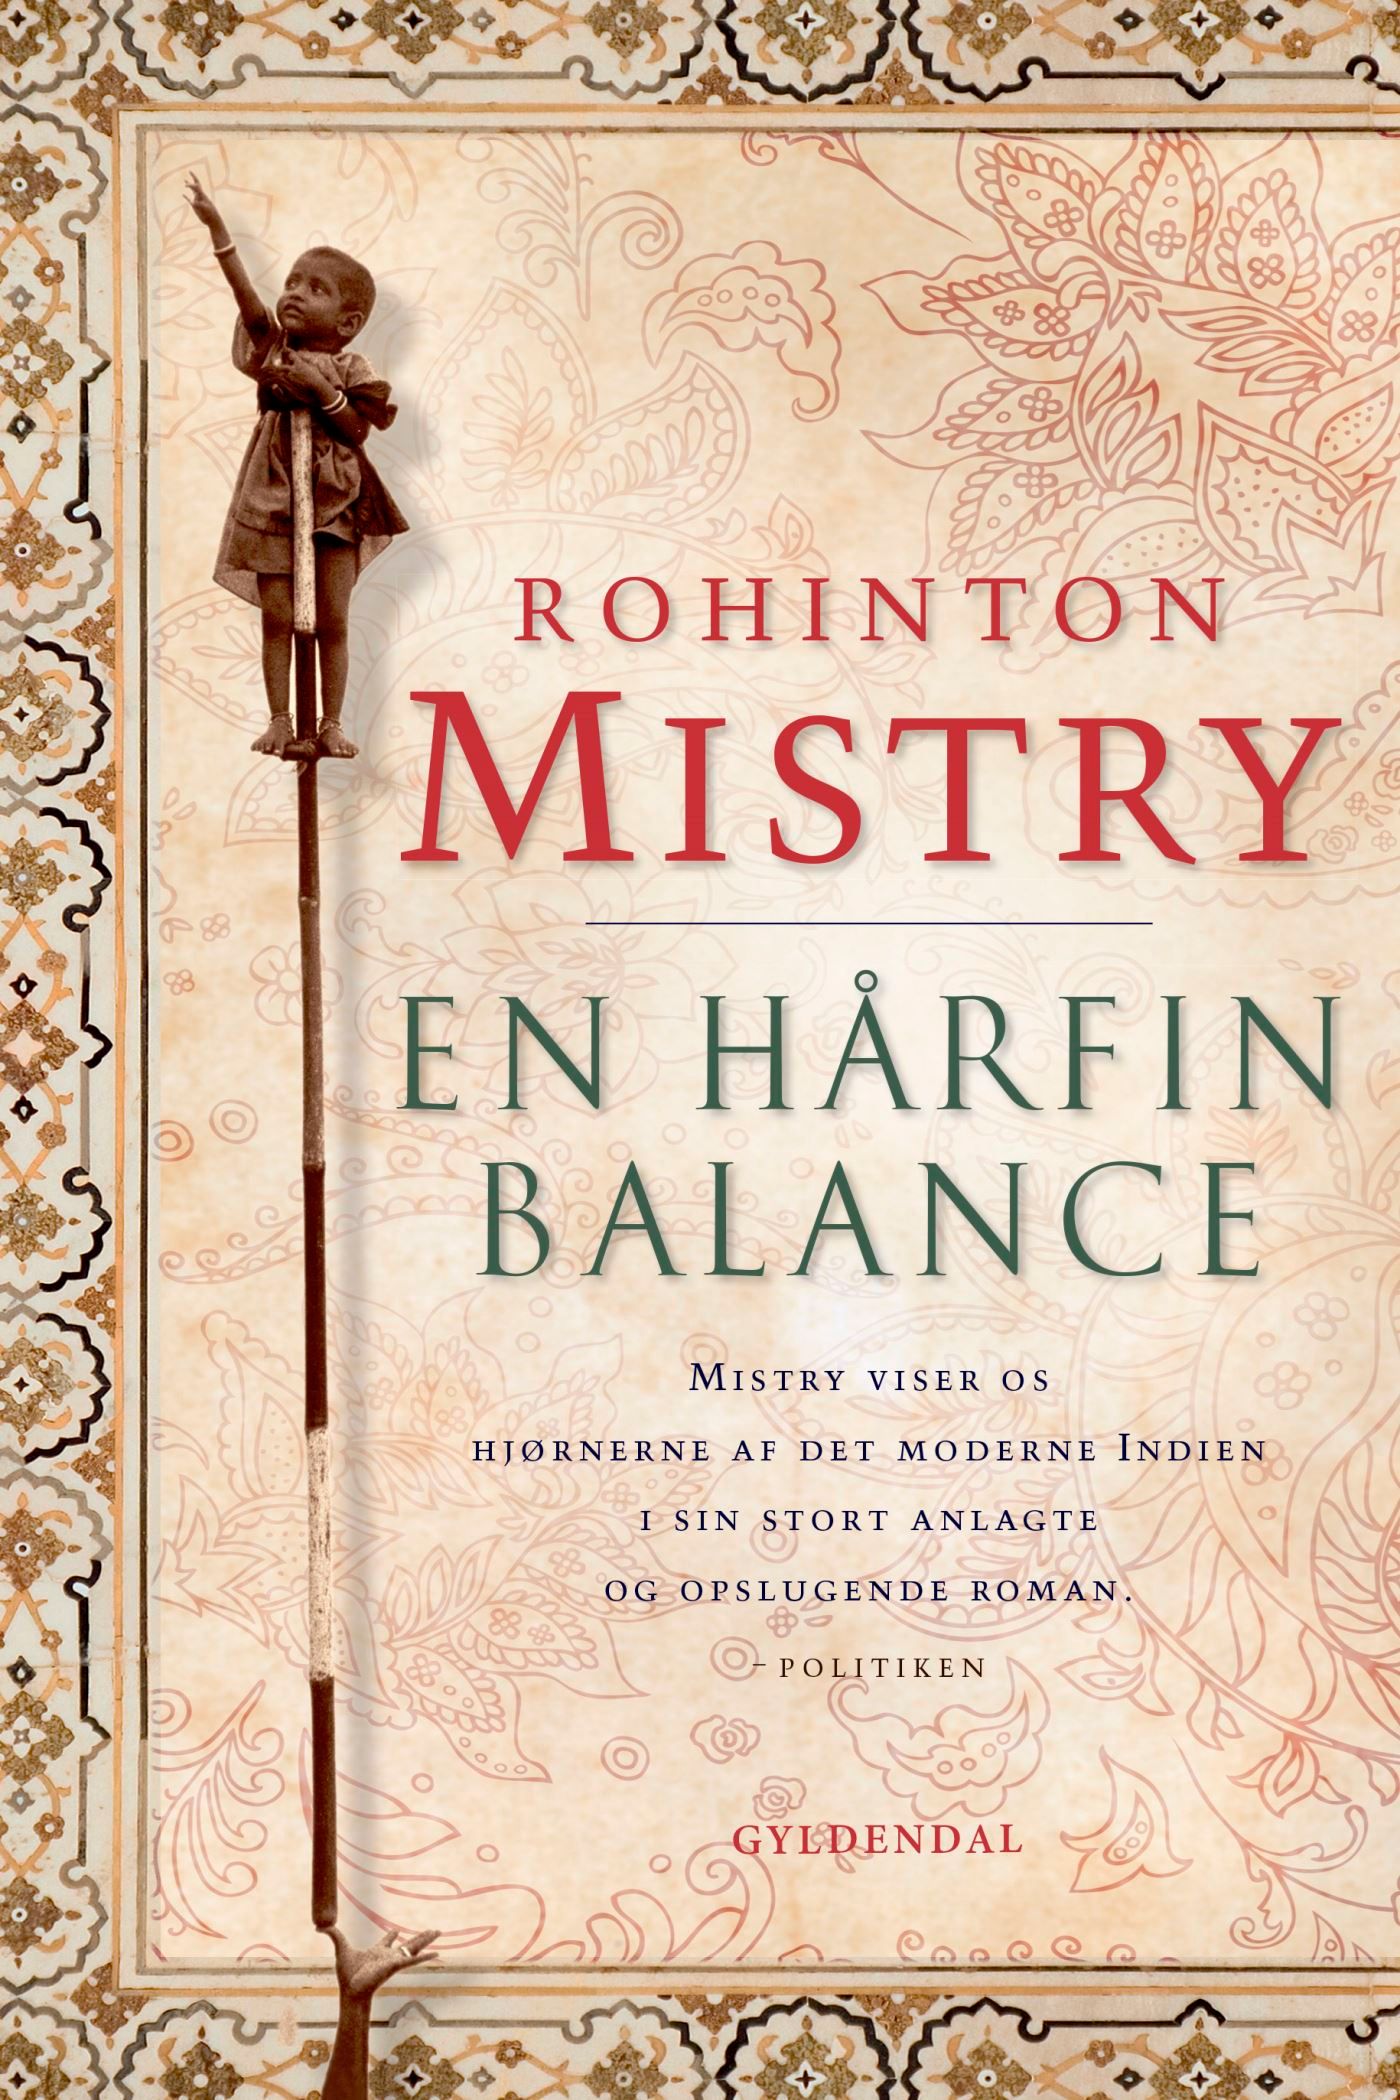 En hårfin balance, e-bog af Rohinton Mistry